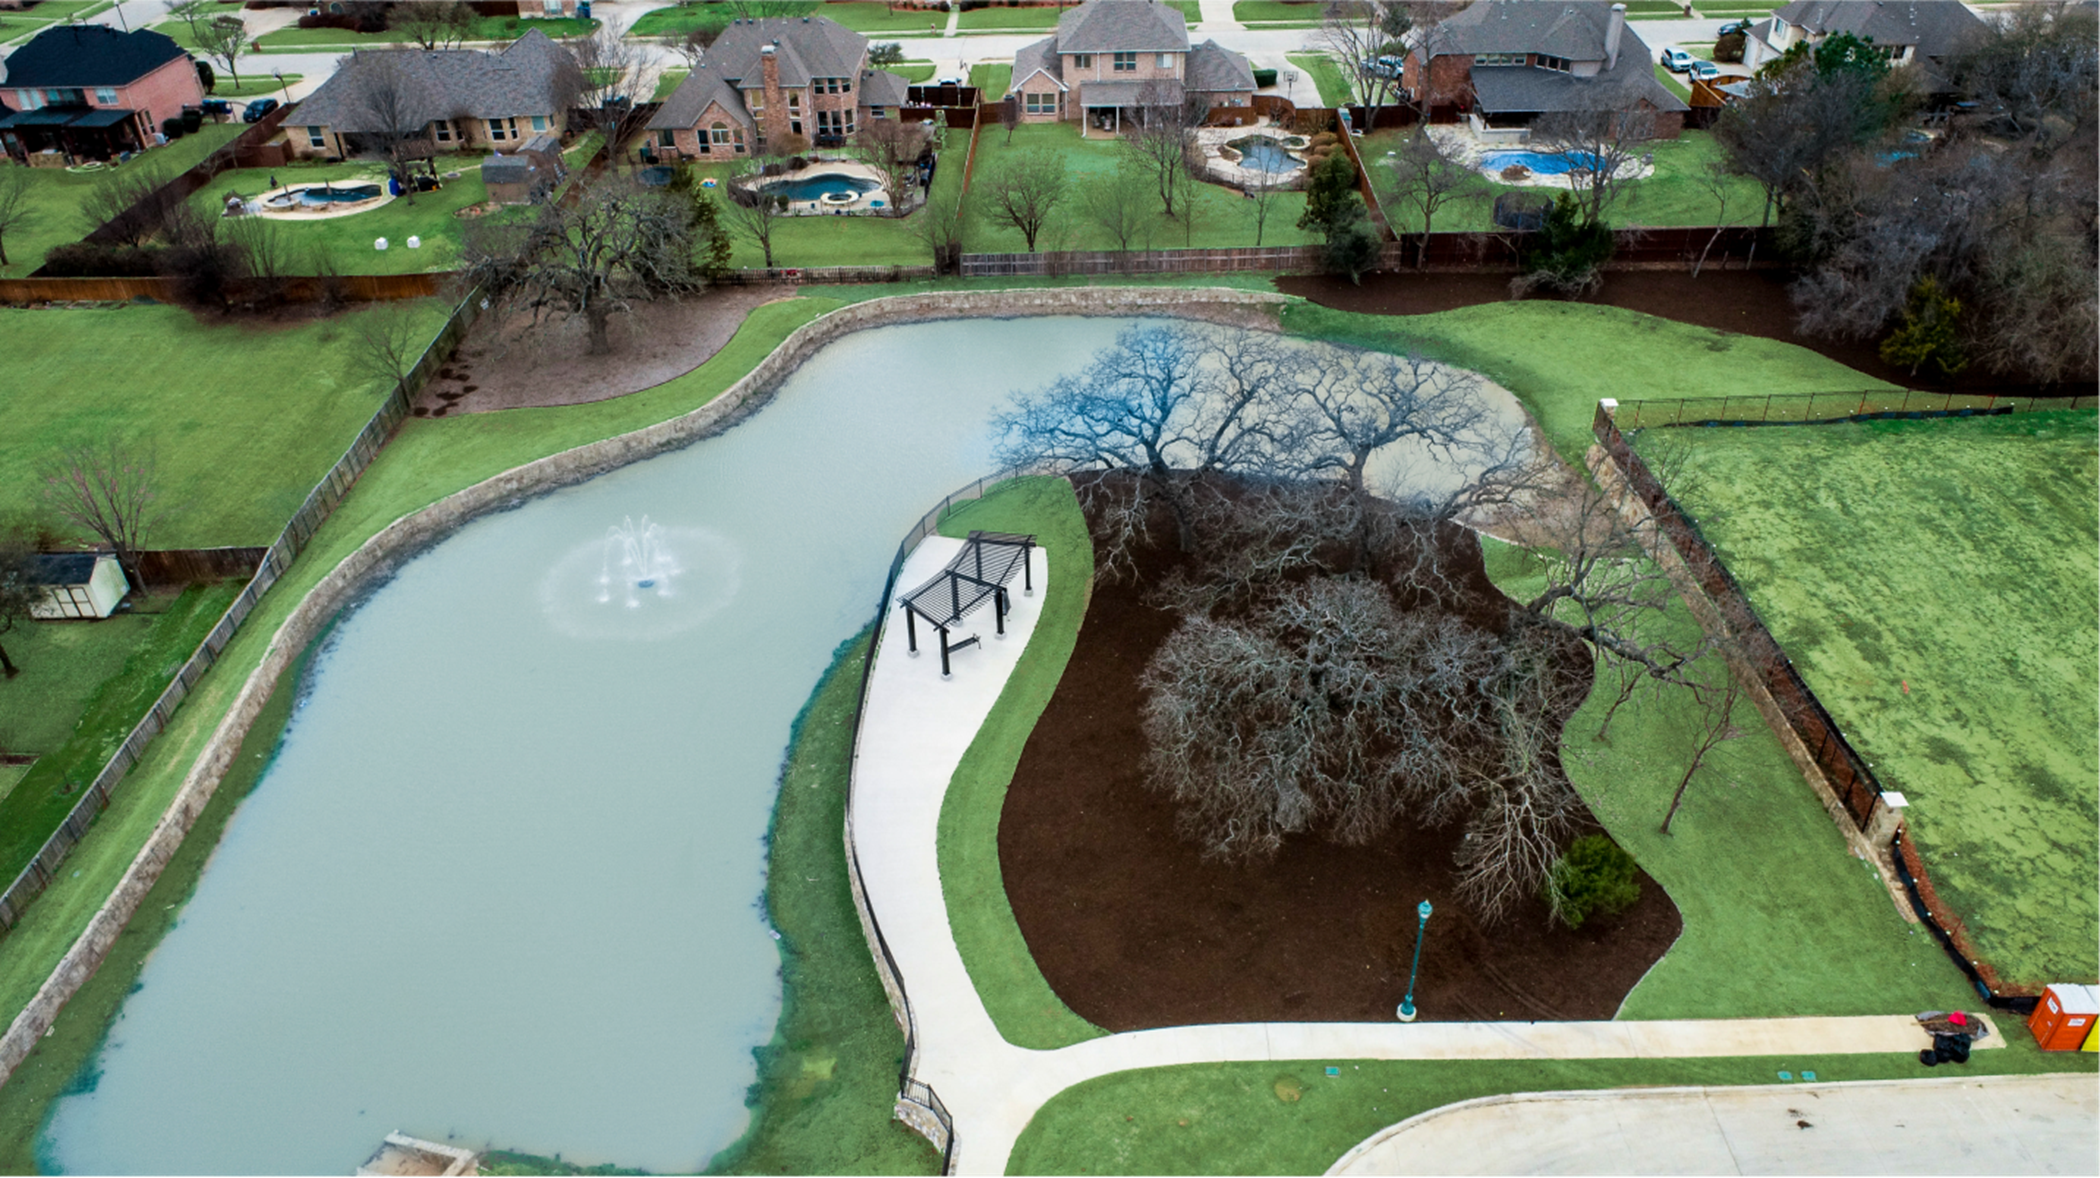 Bradford Park pond aerial